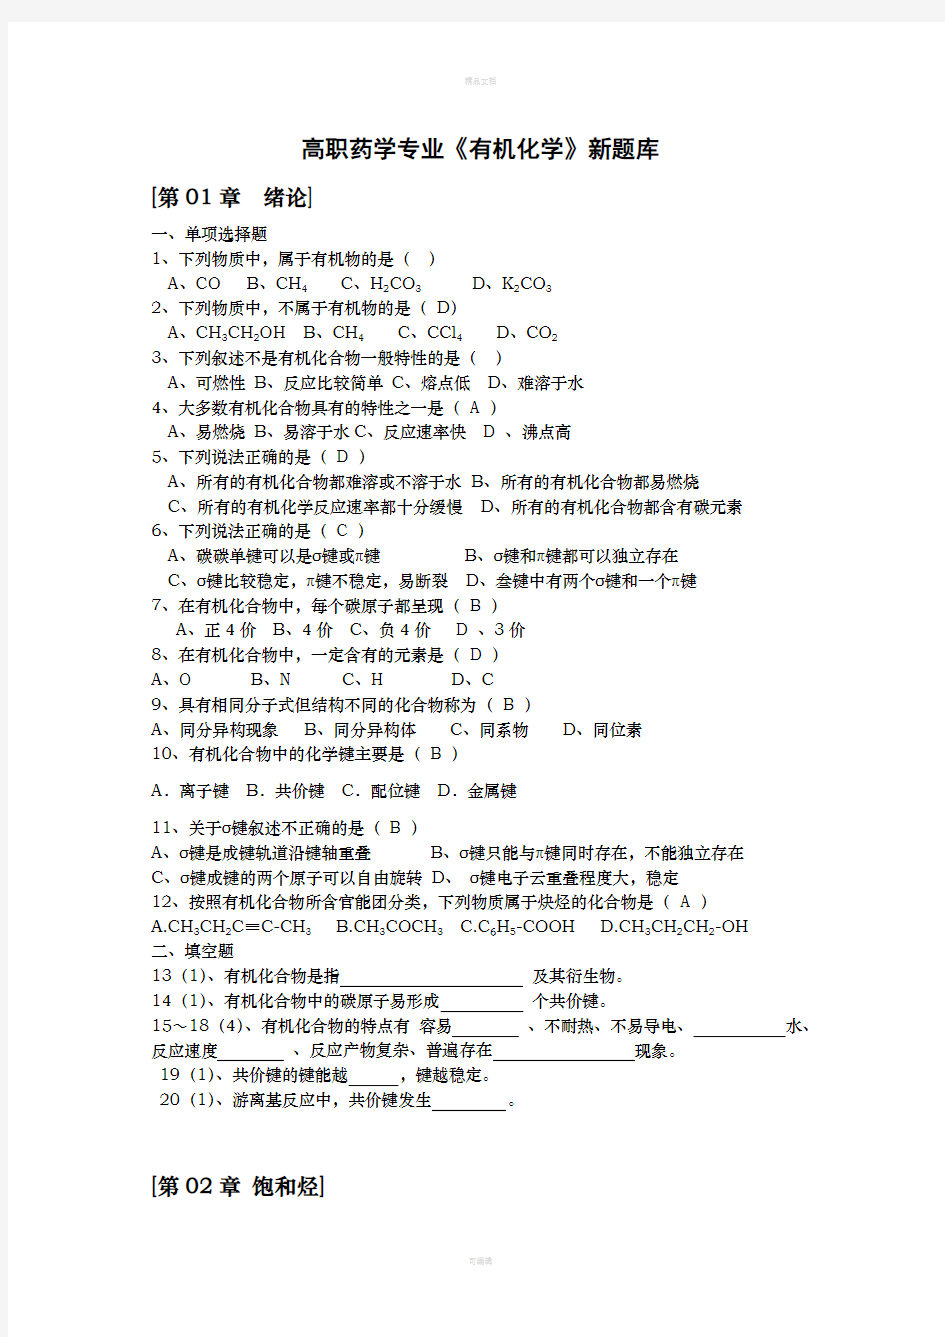 2010高职药学专业有机化学题库(上交)